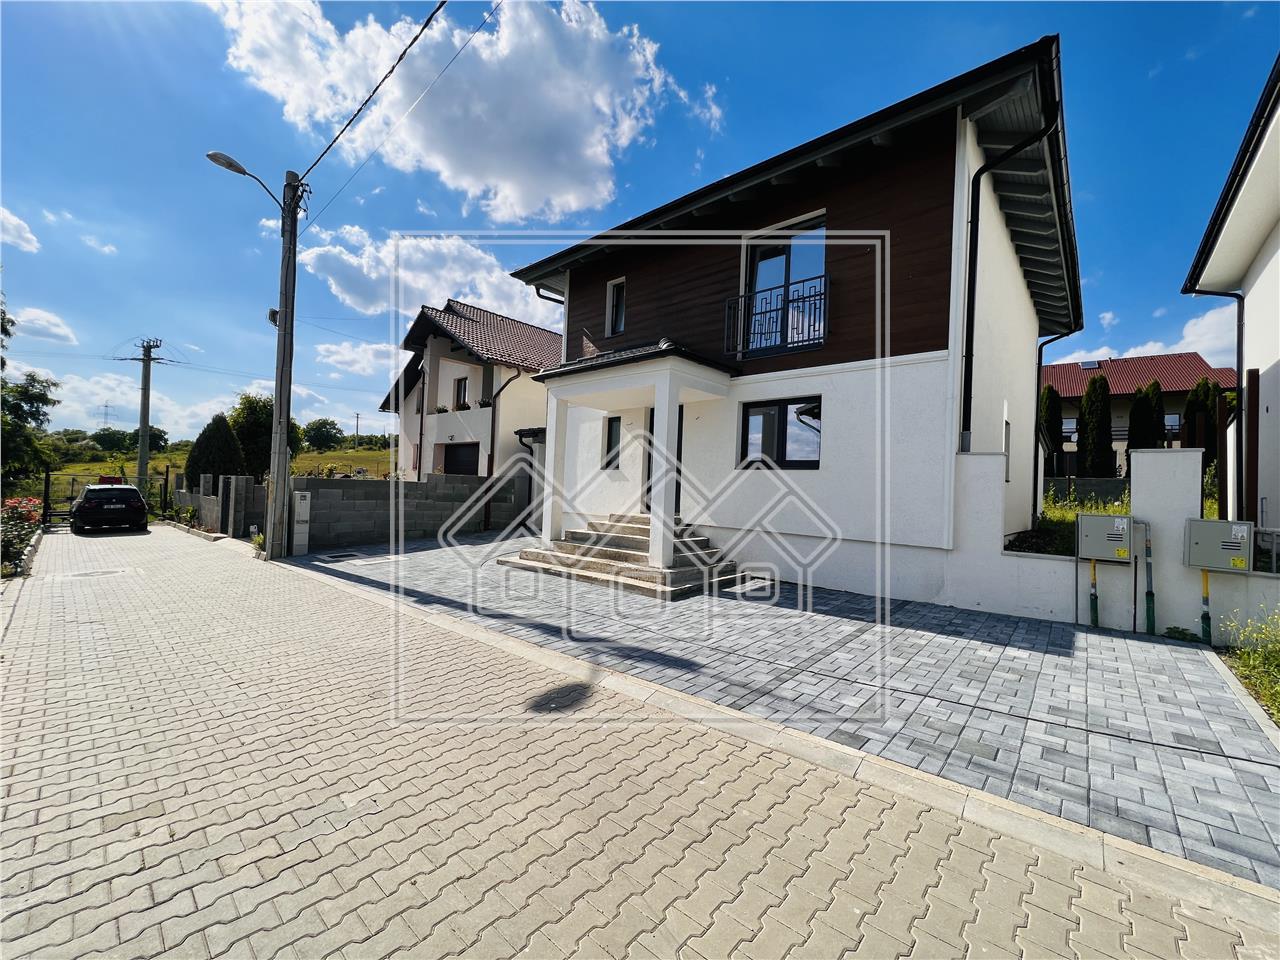 Casa de vanzare in Sibiu- individuala- terasa- carport- C. Bavaria